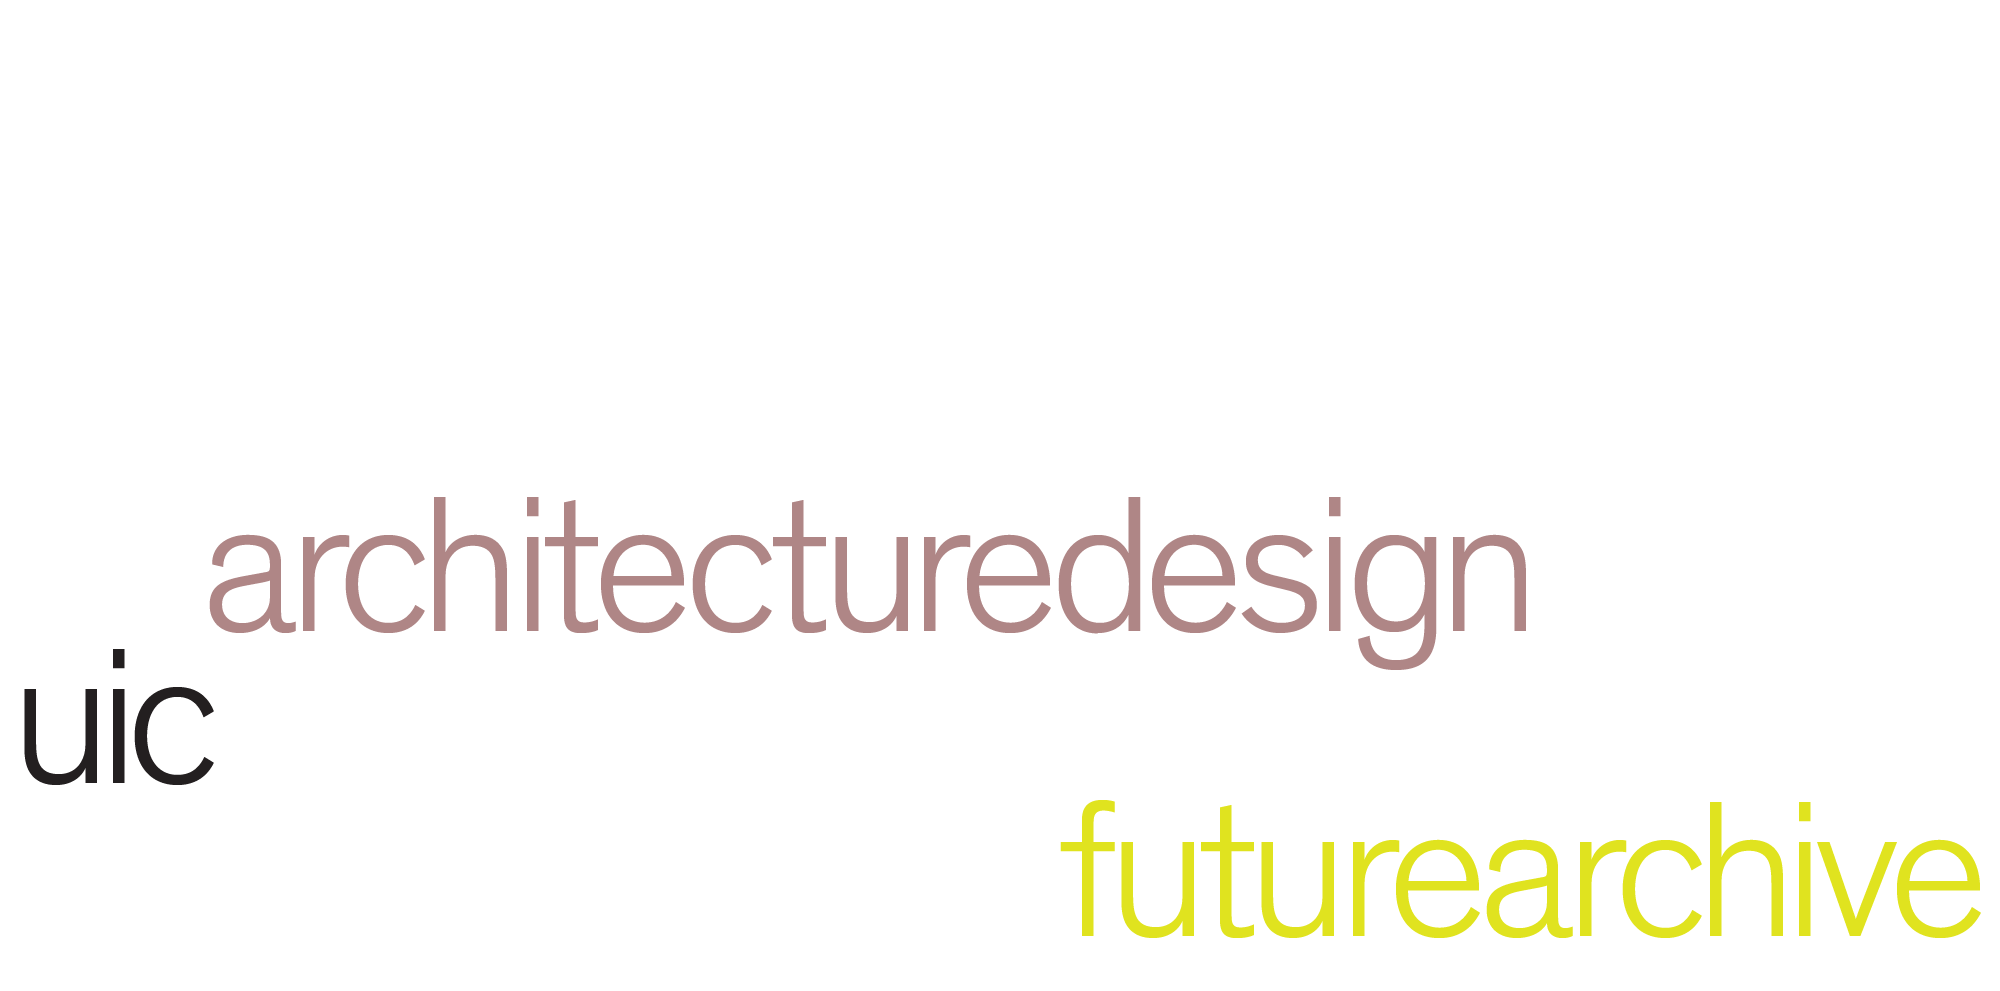 uic architecturedesign futurearchive